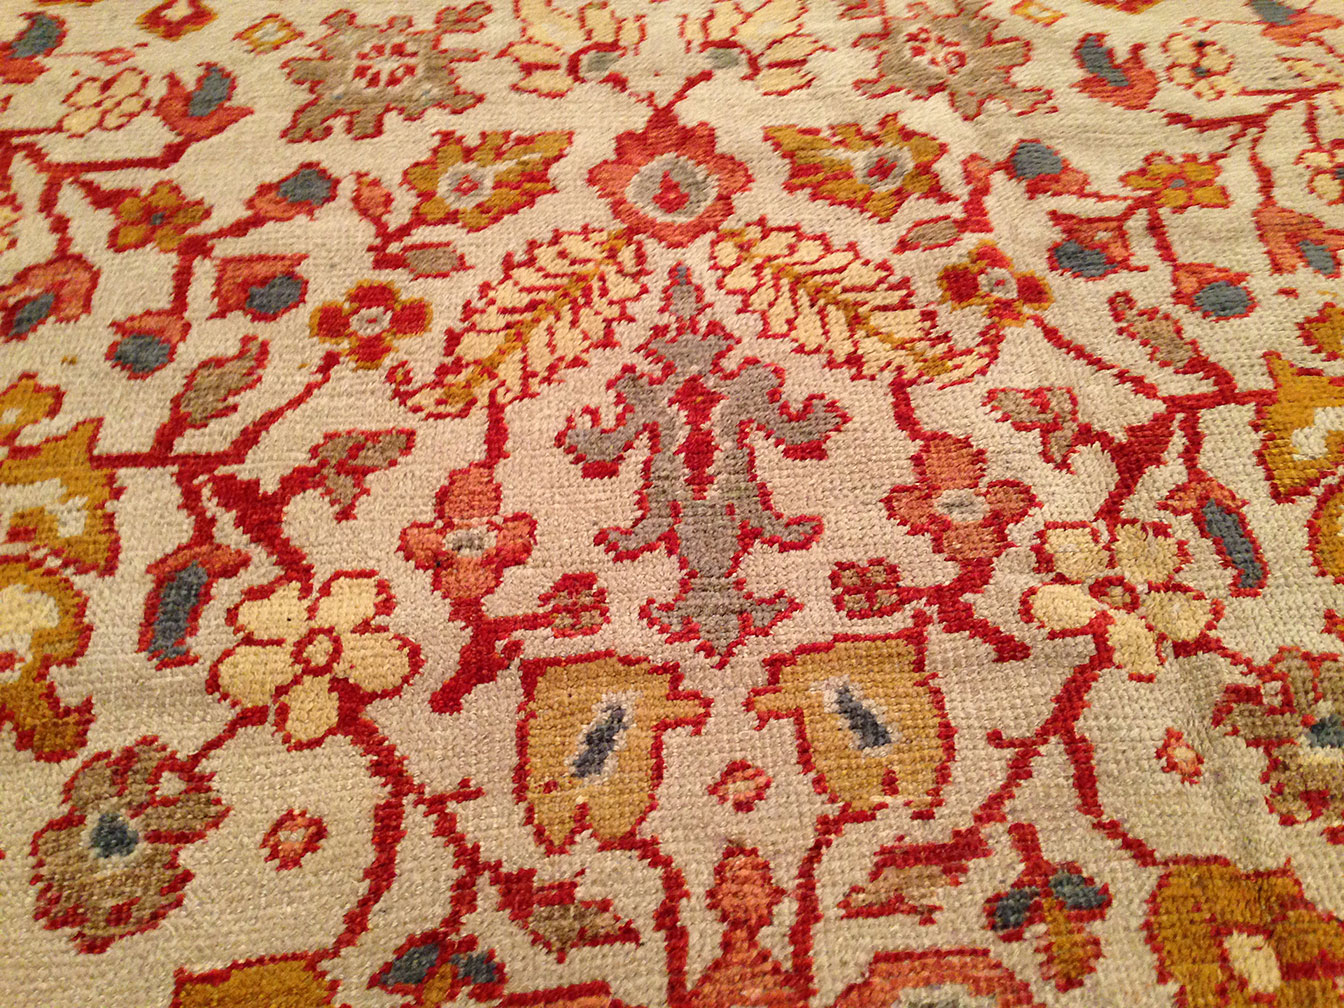 Antique mahal Carpet - # 3622